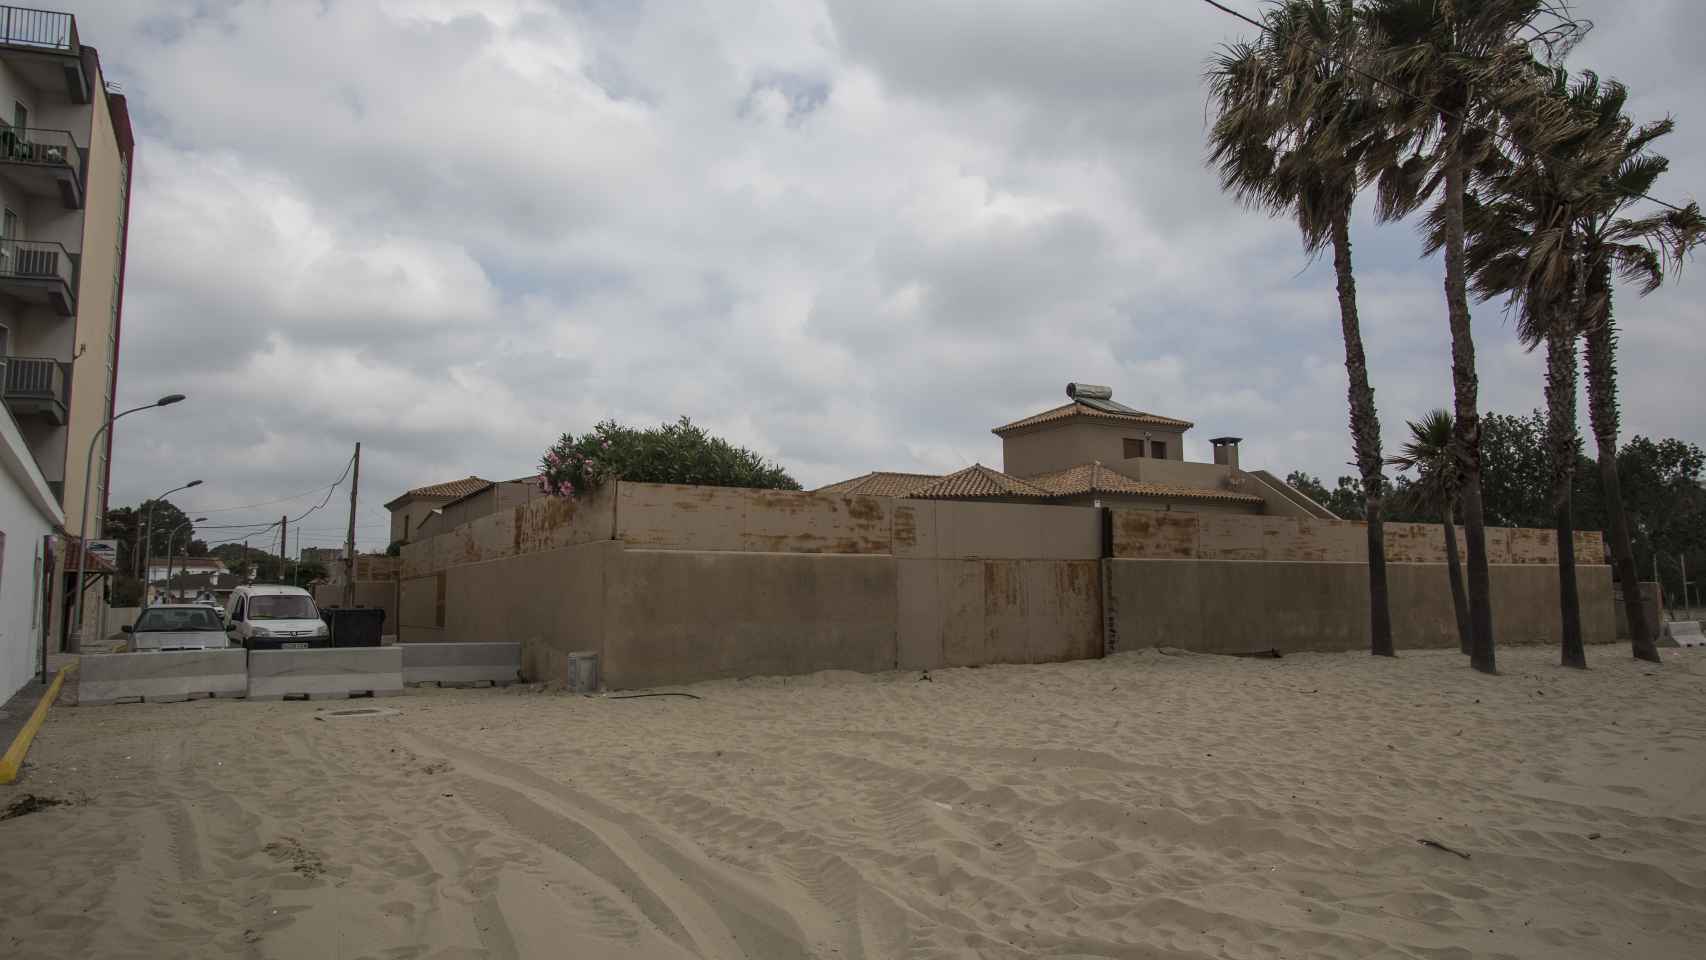 Chalet-fortaleza usada por los traficantes de droga como centro de operaciones. Está ubicada en la playa de Palmones.